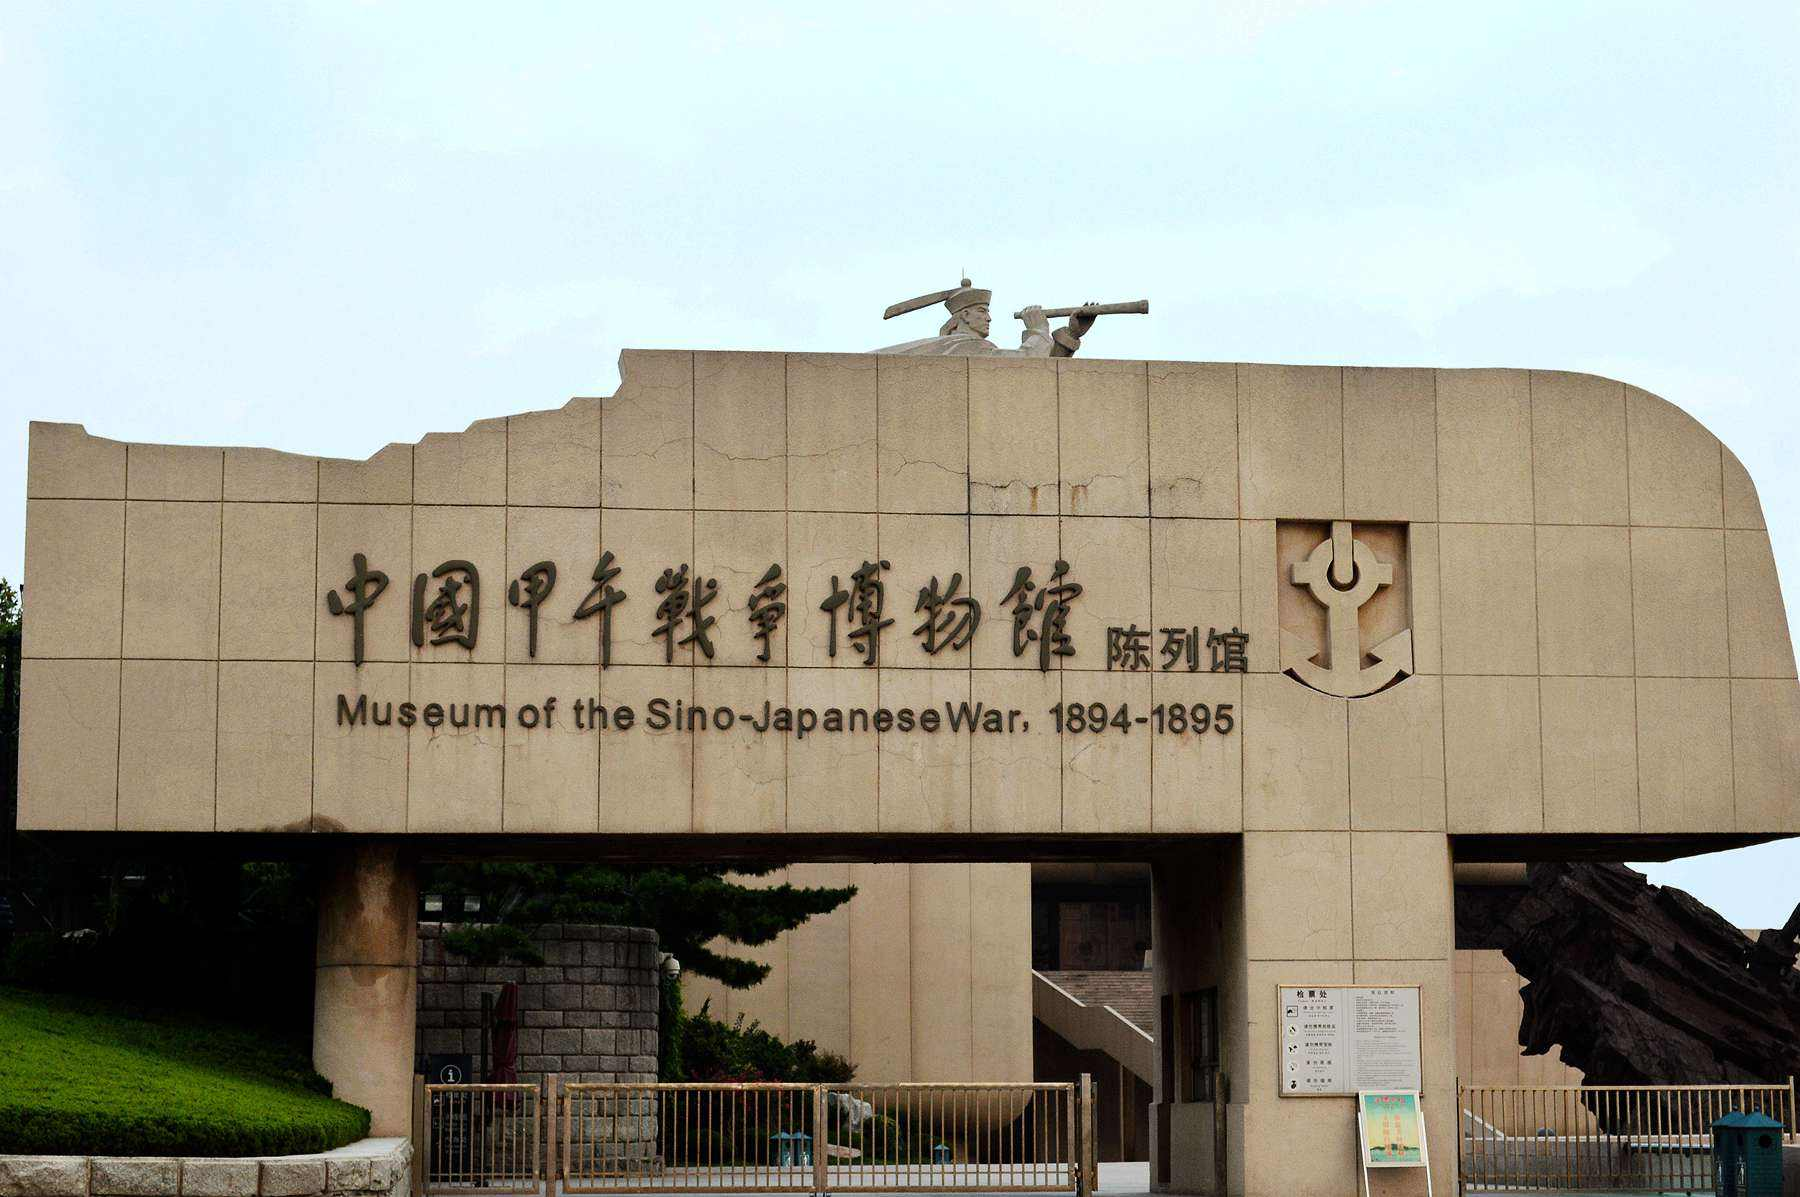 刘公岛甲午战争纪念遗址及博物馆